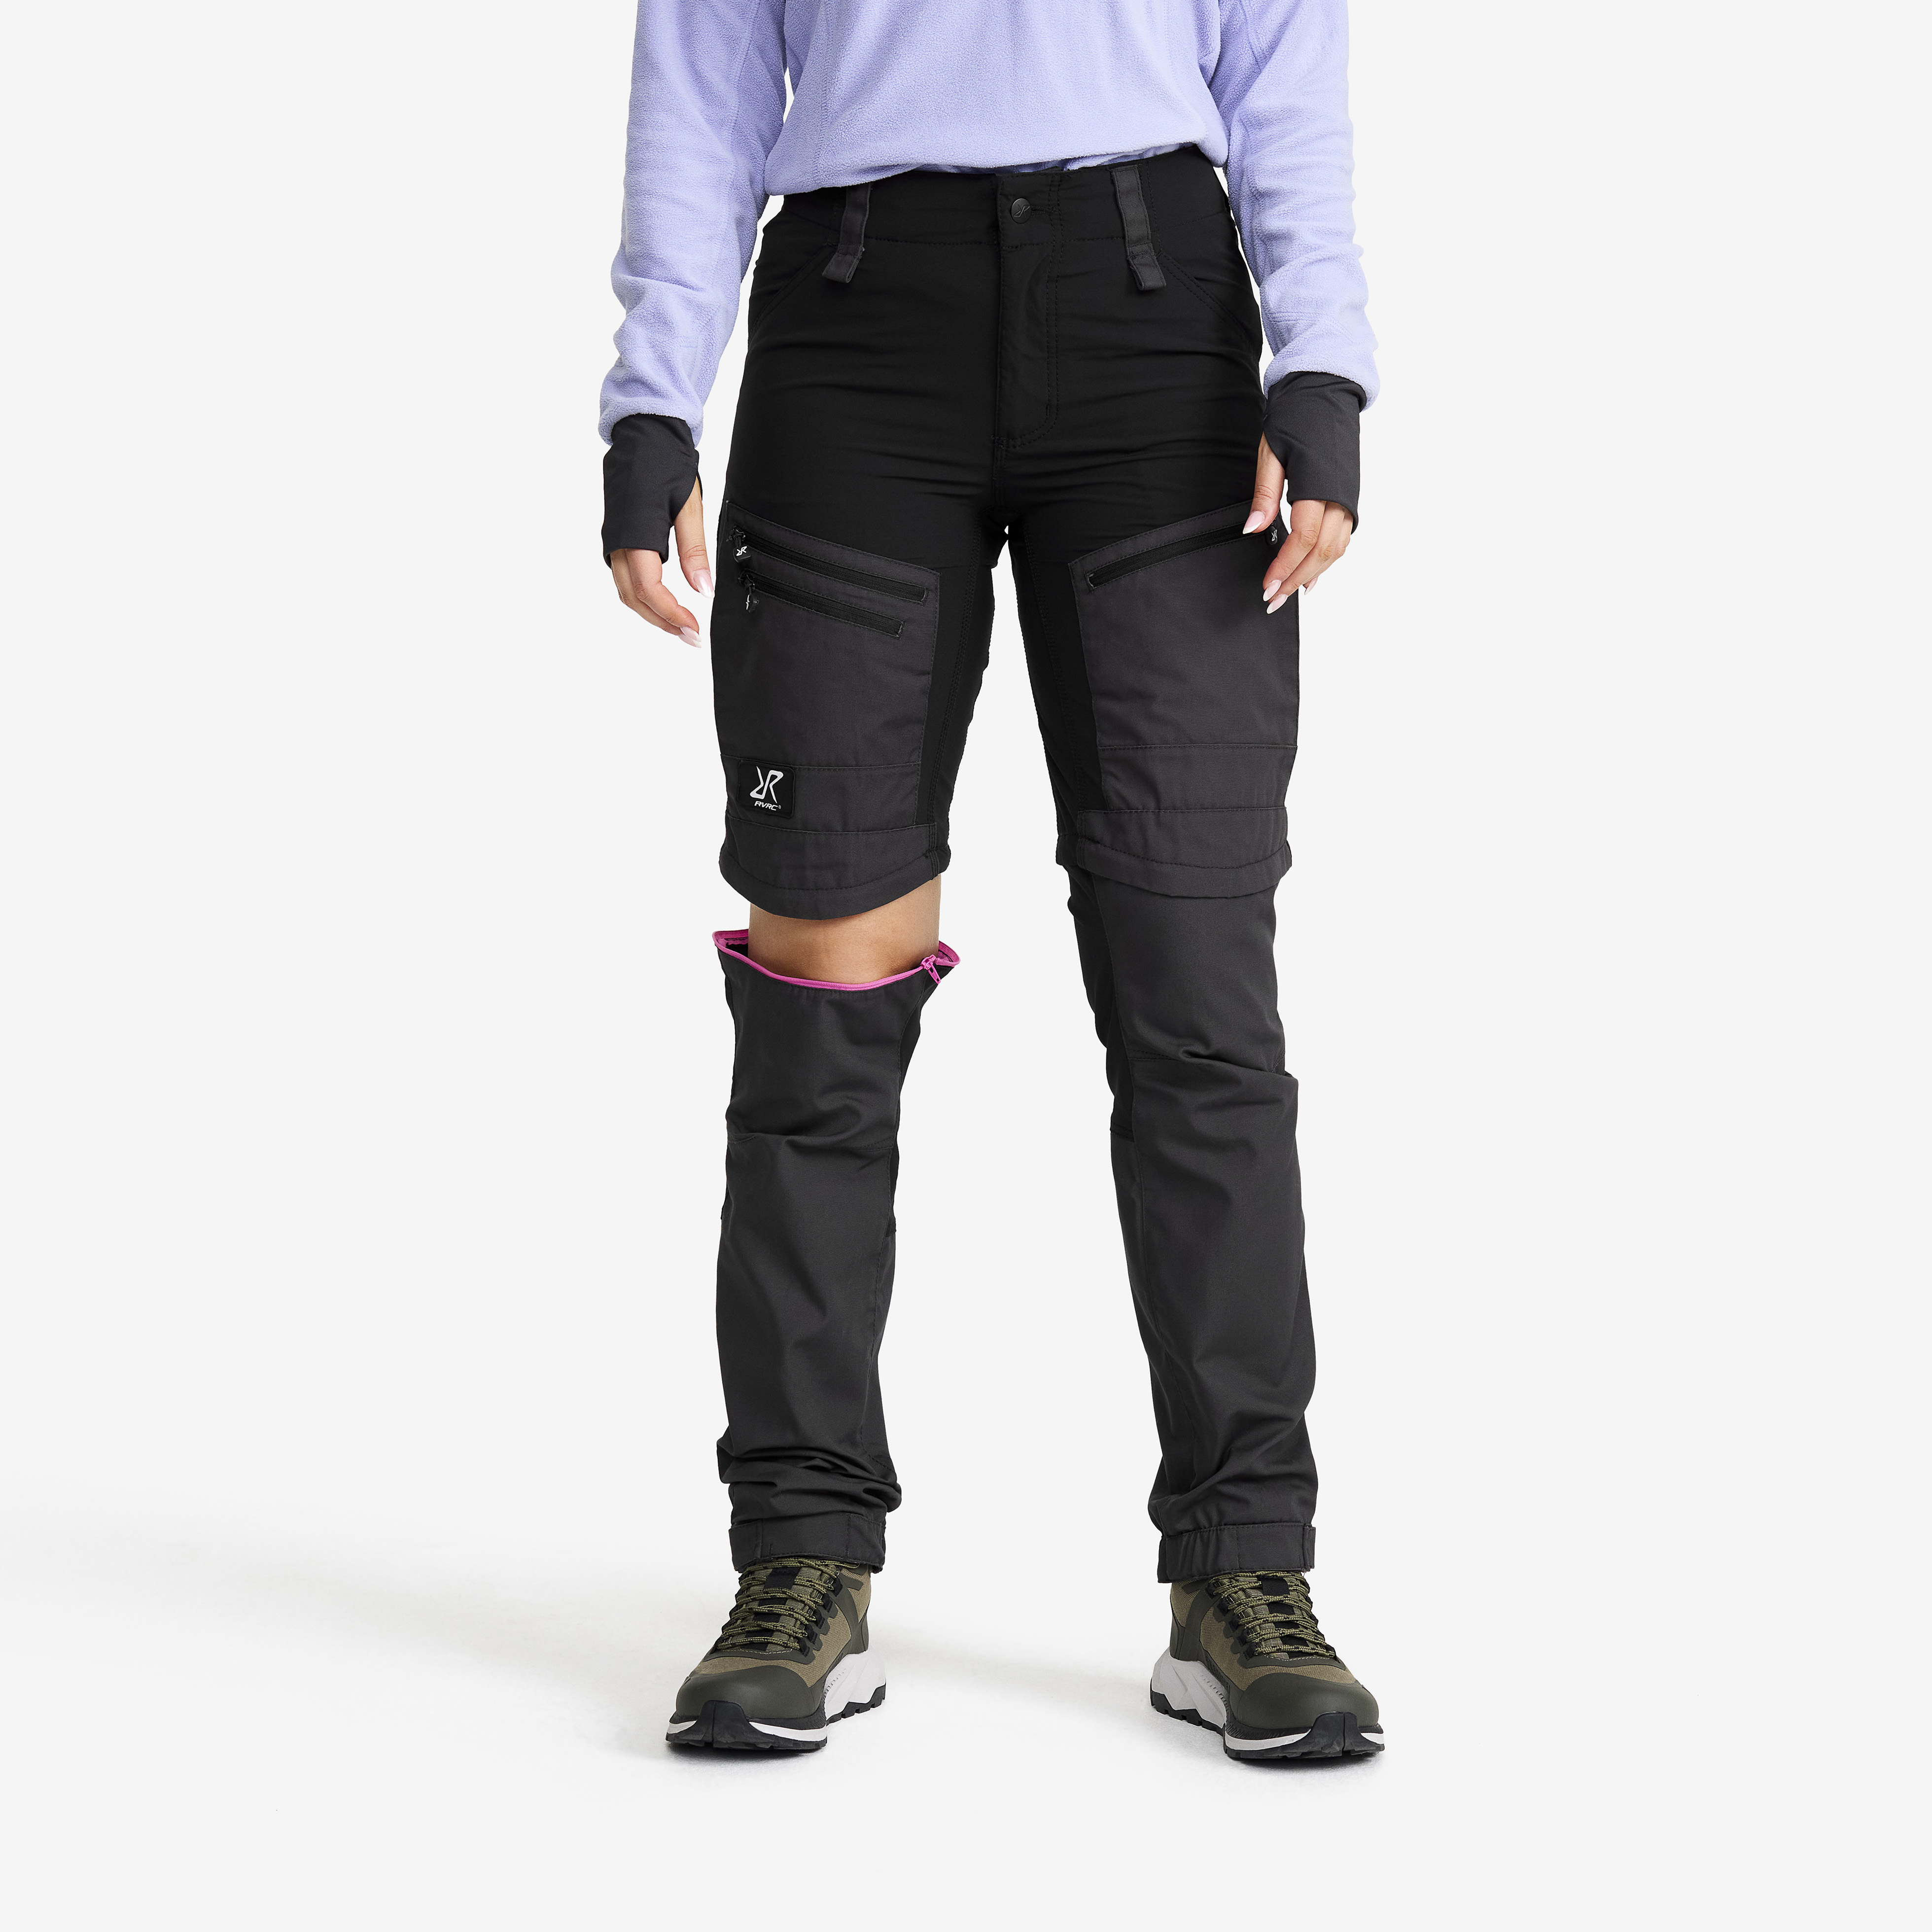 RVRC GP Pro Zip-off turistické kalhoty pro muže v černé barvě